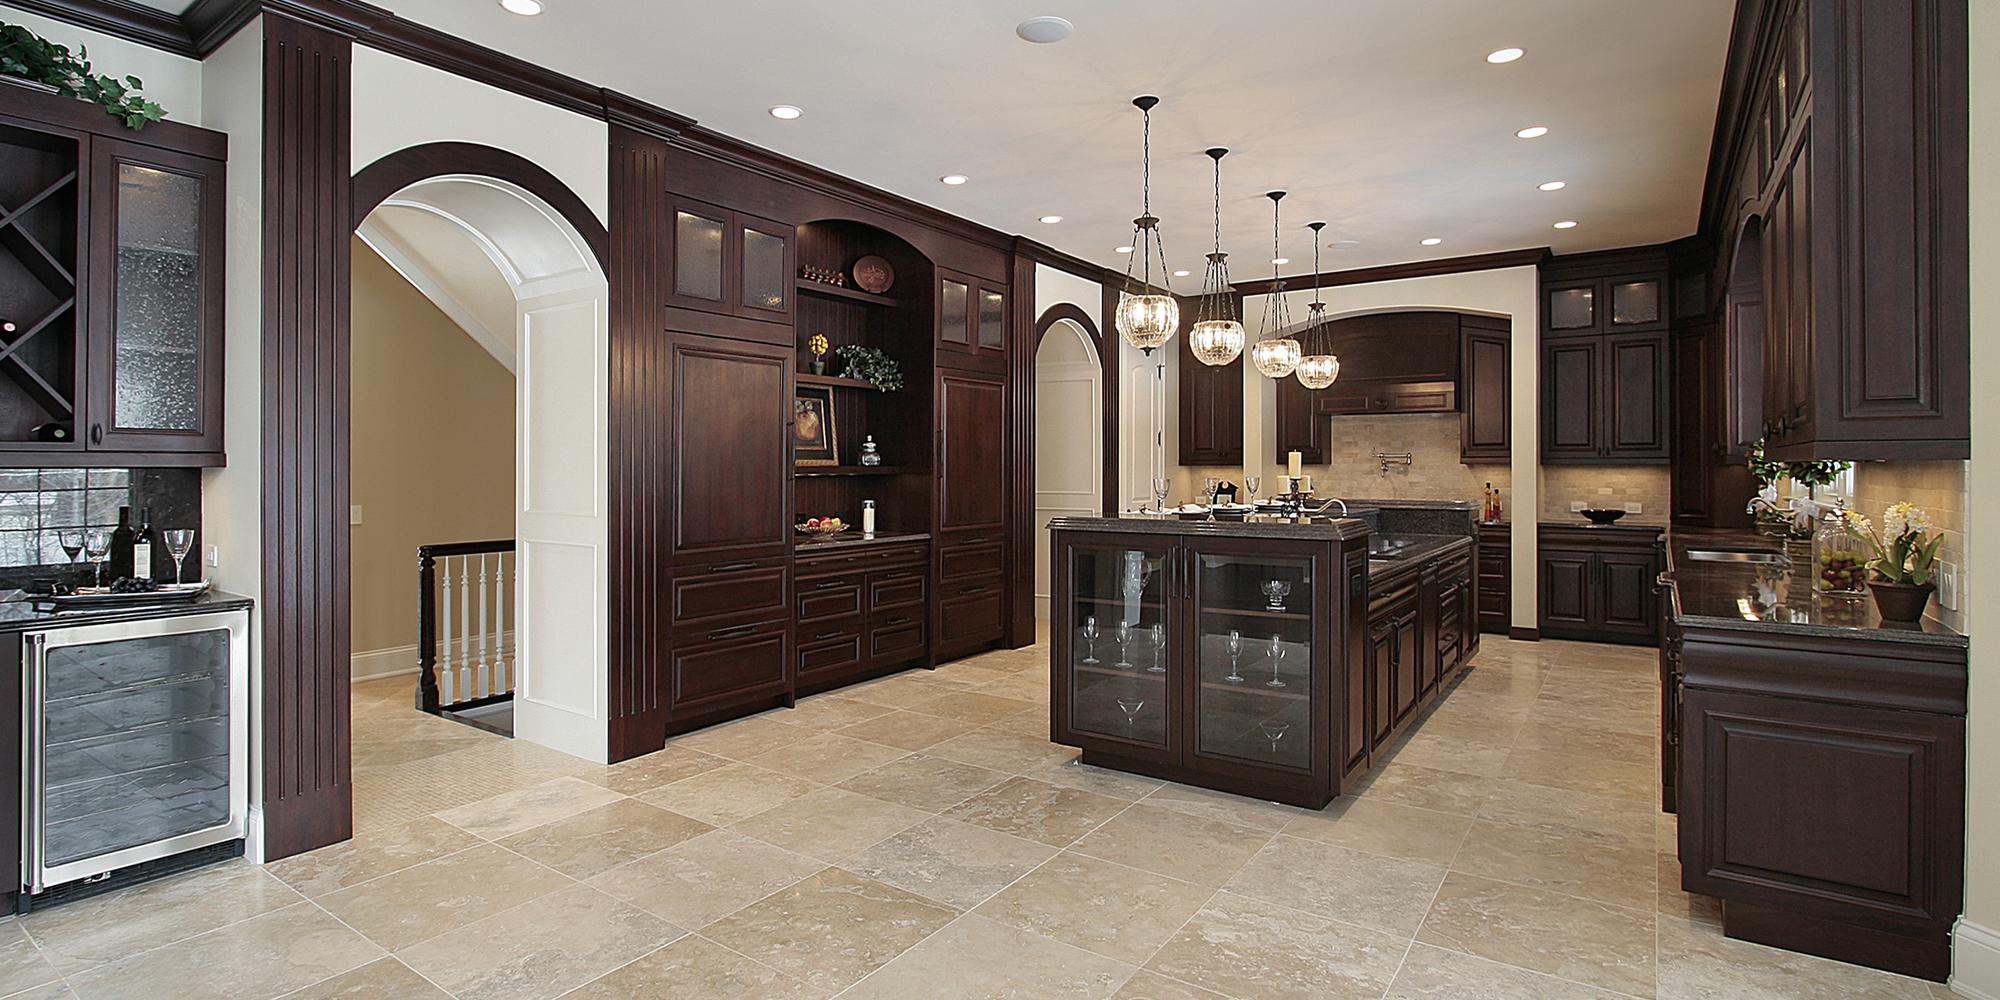 3 Best Kitchen Flooring Materials Home Works Home Improvement